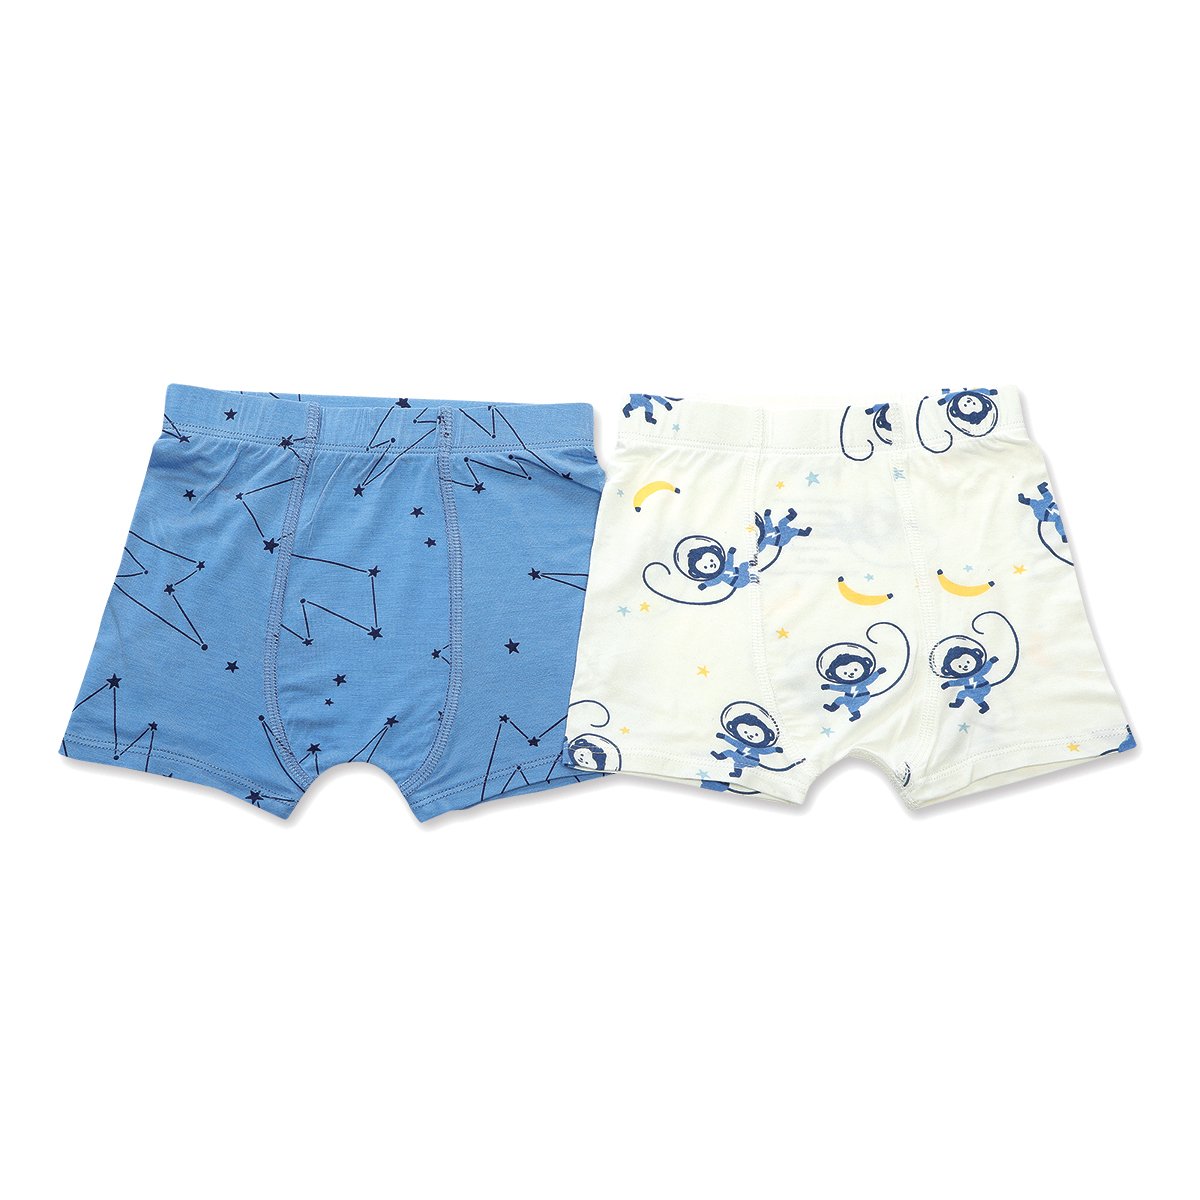 Kids Essentials, Bamboo Rayon Underwear